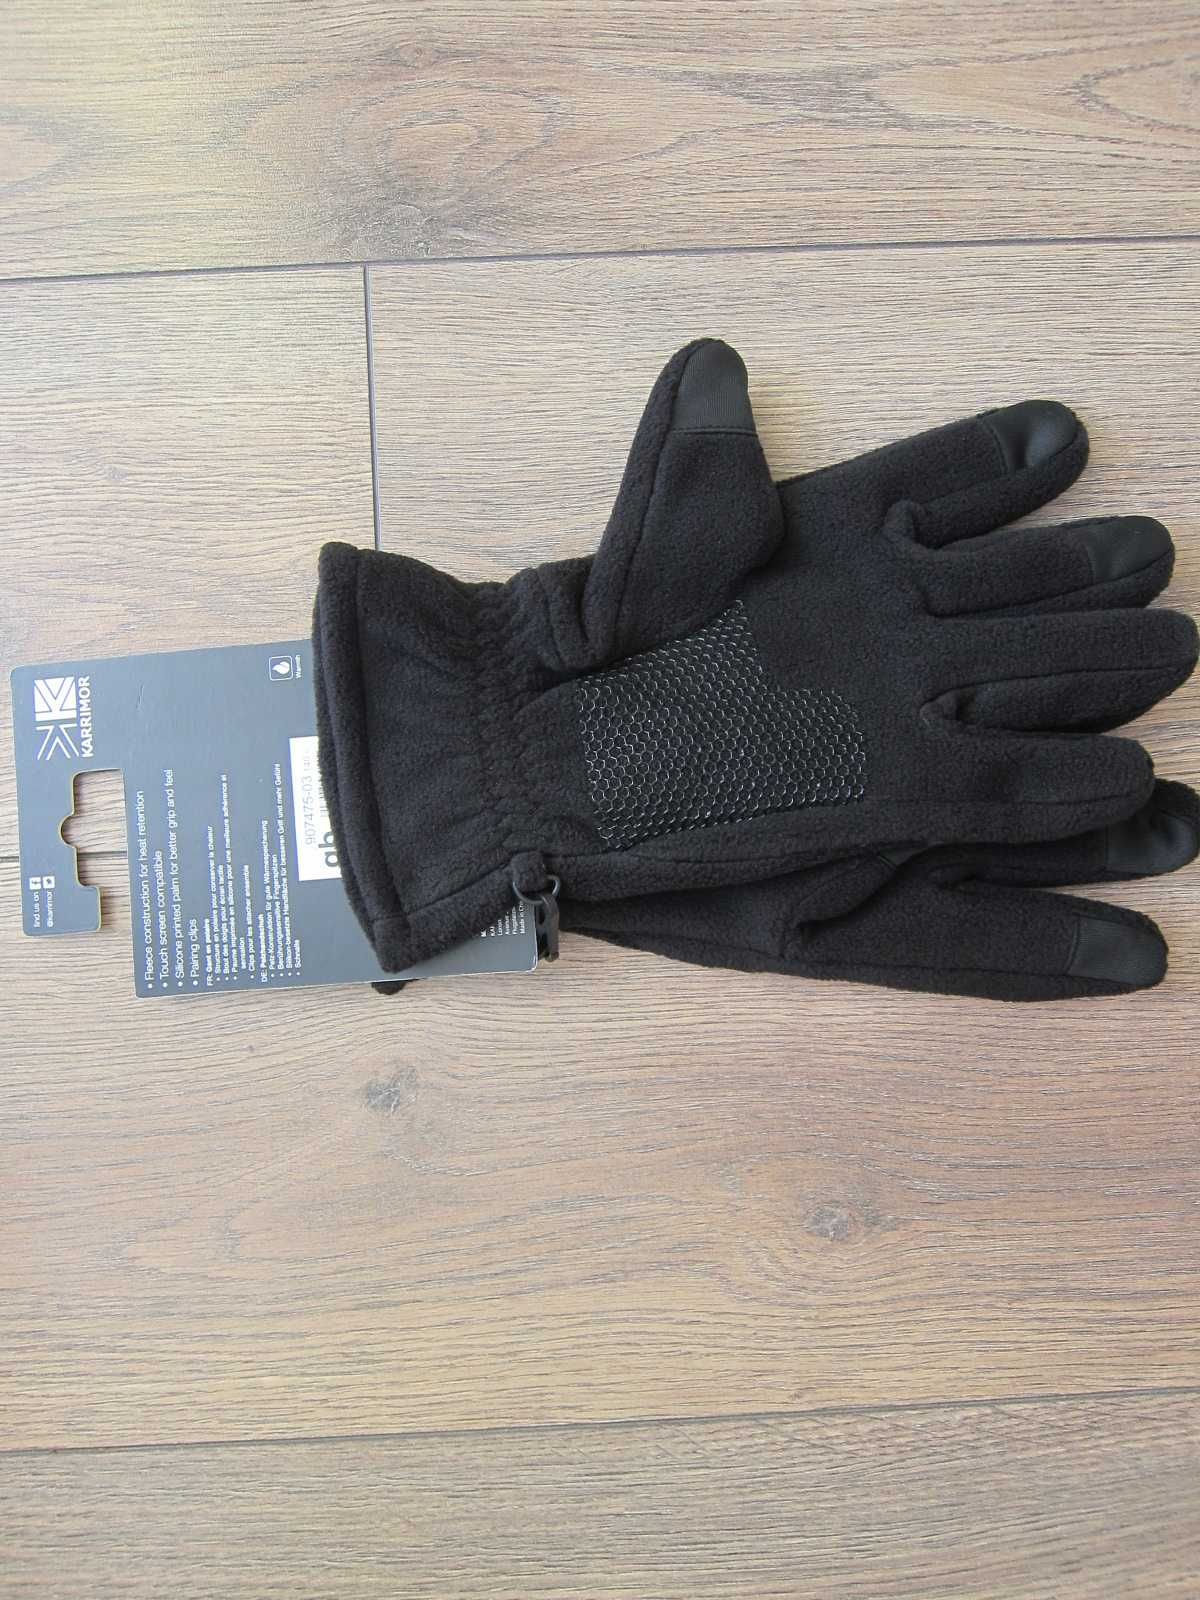 Перчатки зимние мужские Karrimor, флис,  сенсорные пальцы, оригинал